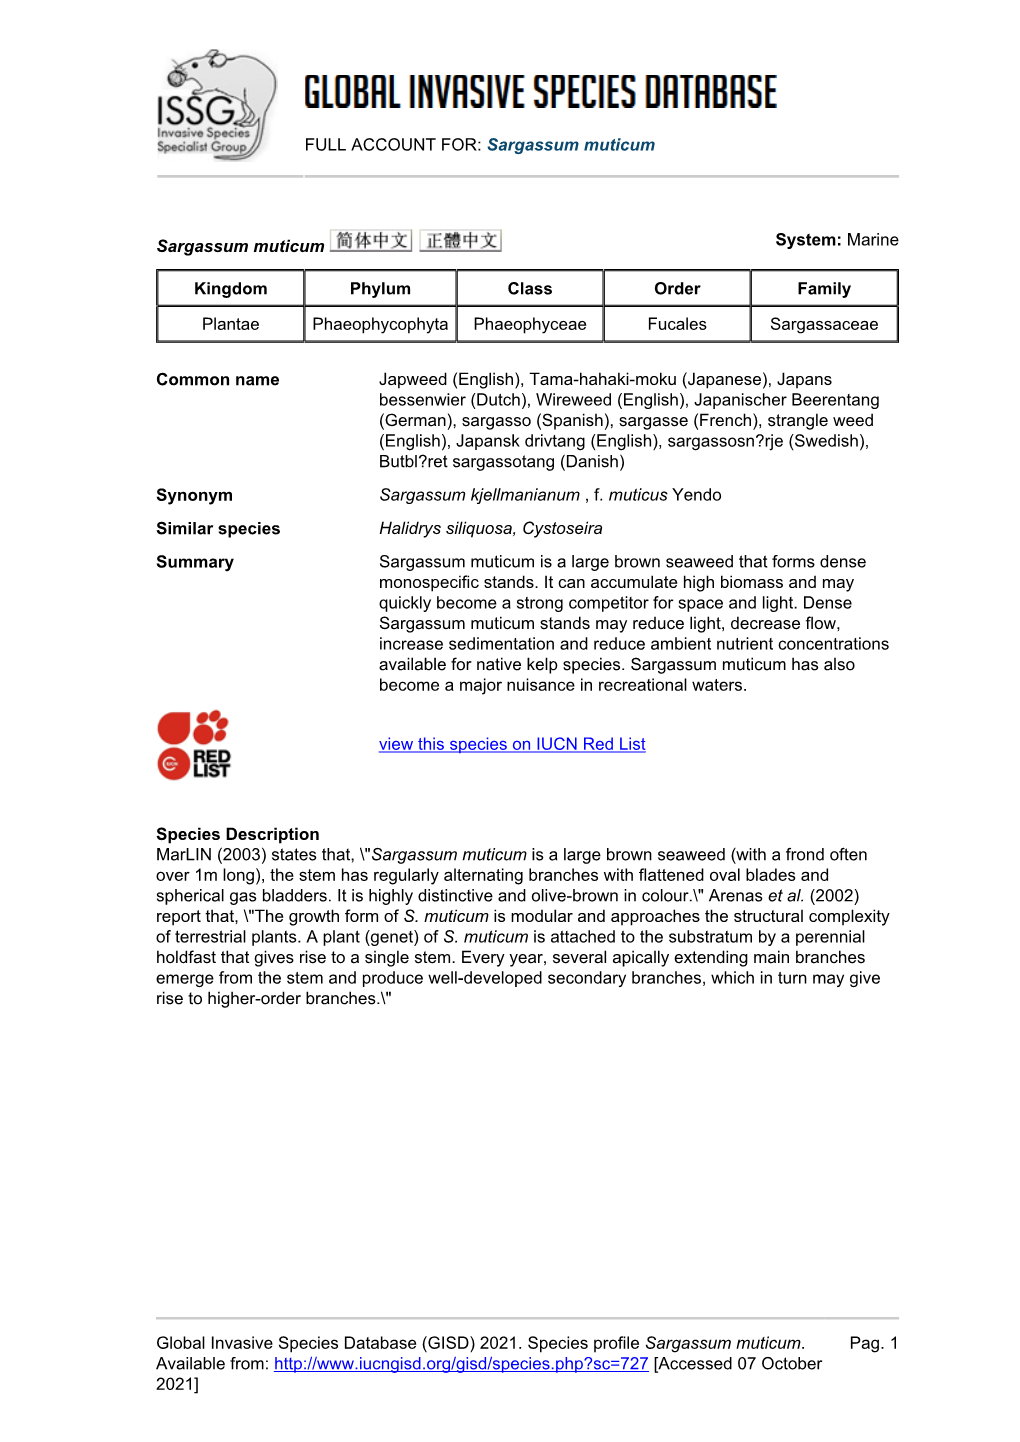 (GISD) 2021. Species Profile Sargassum Muticum. Available F